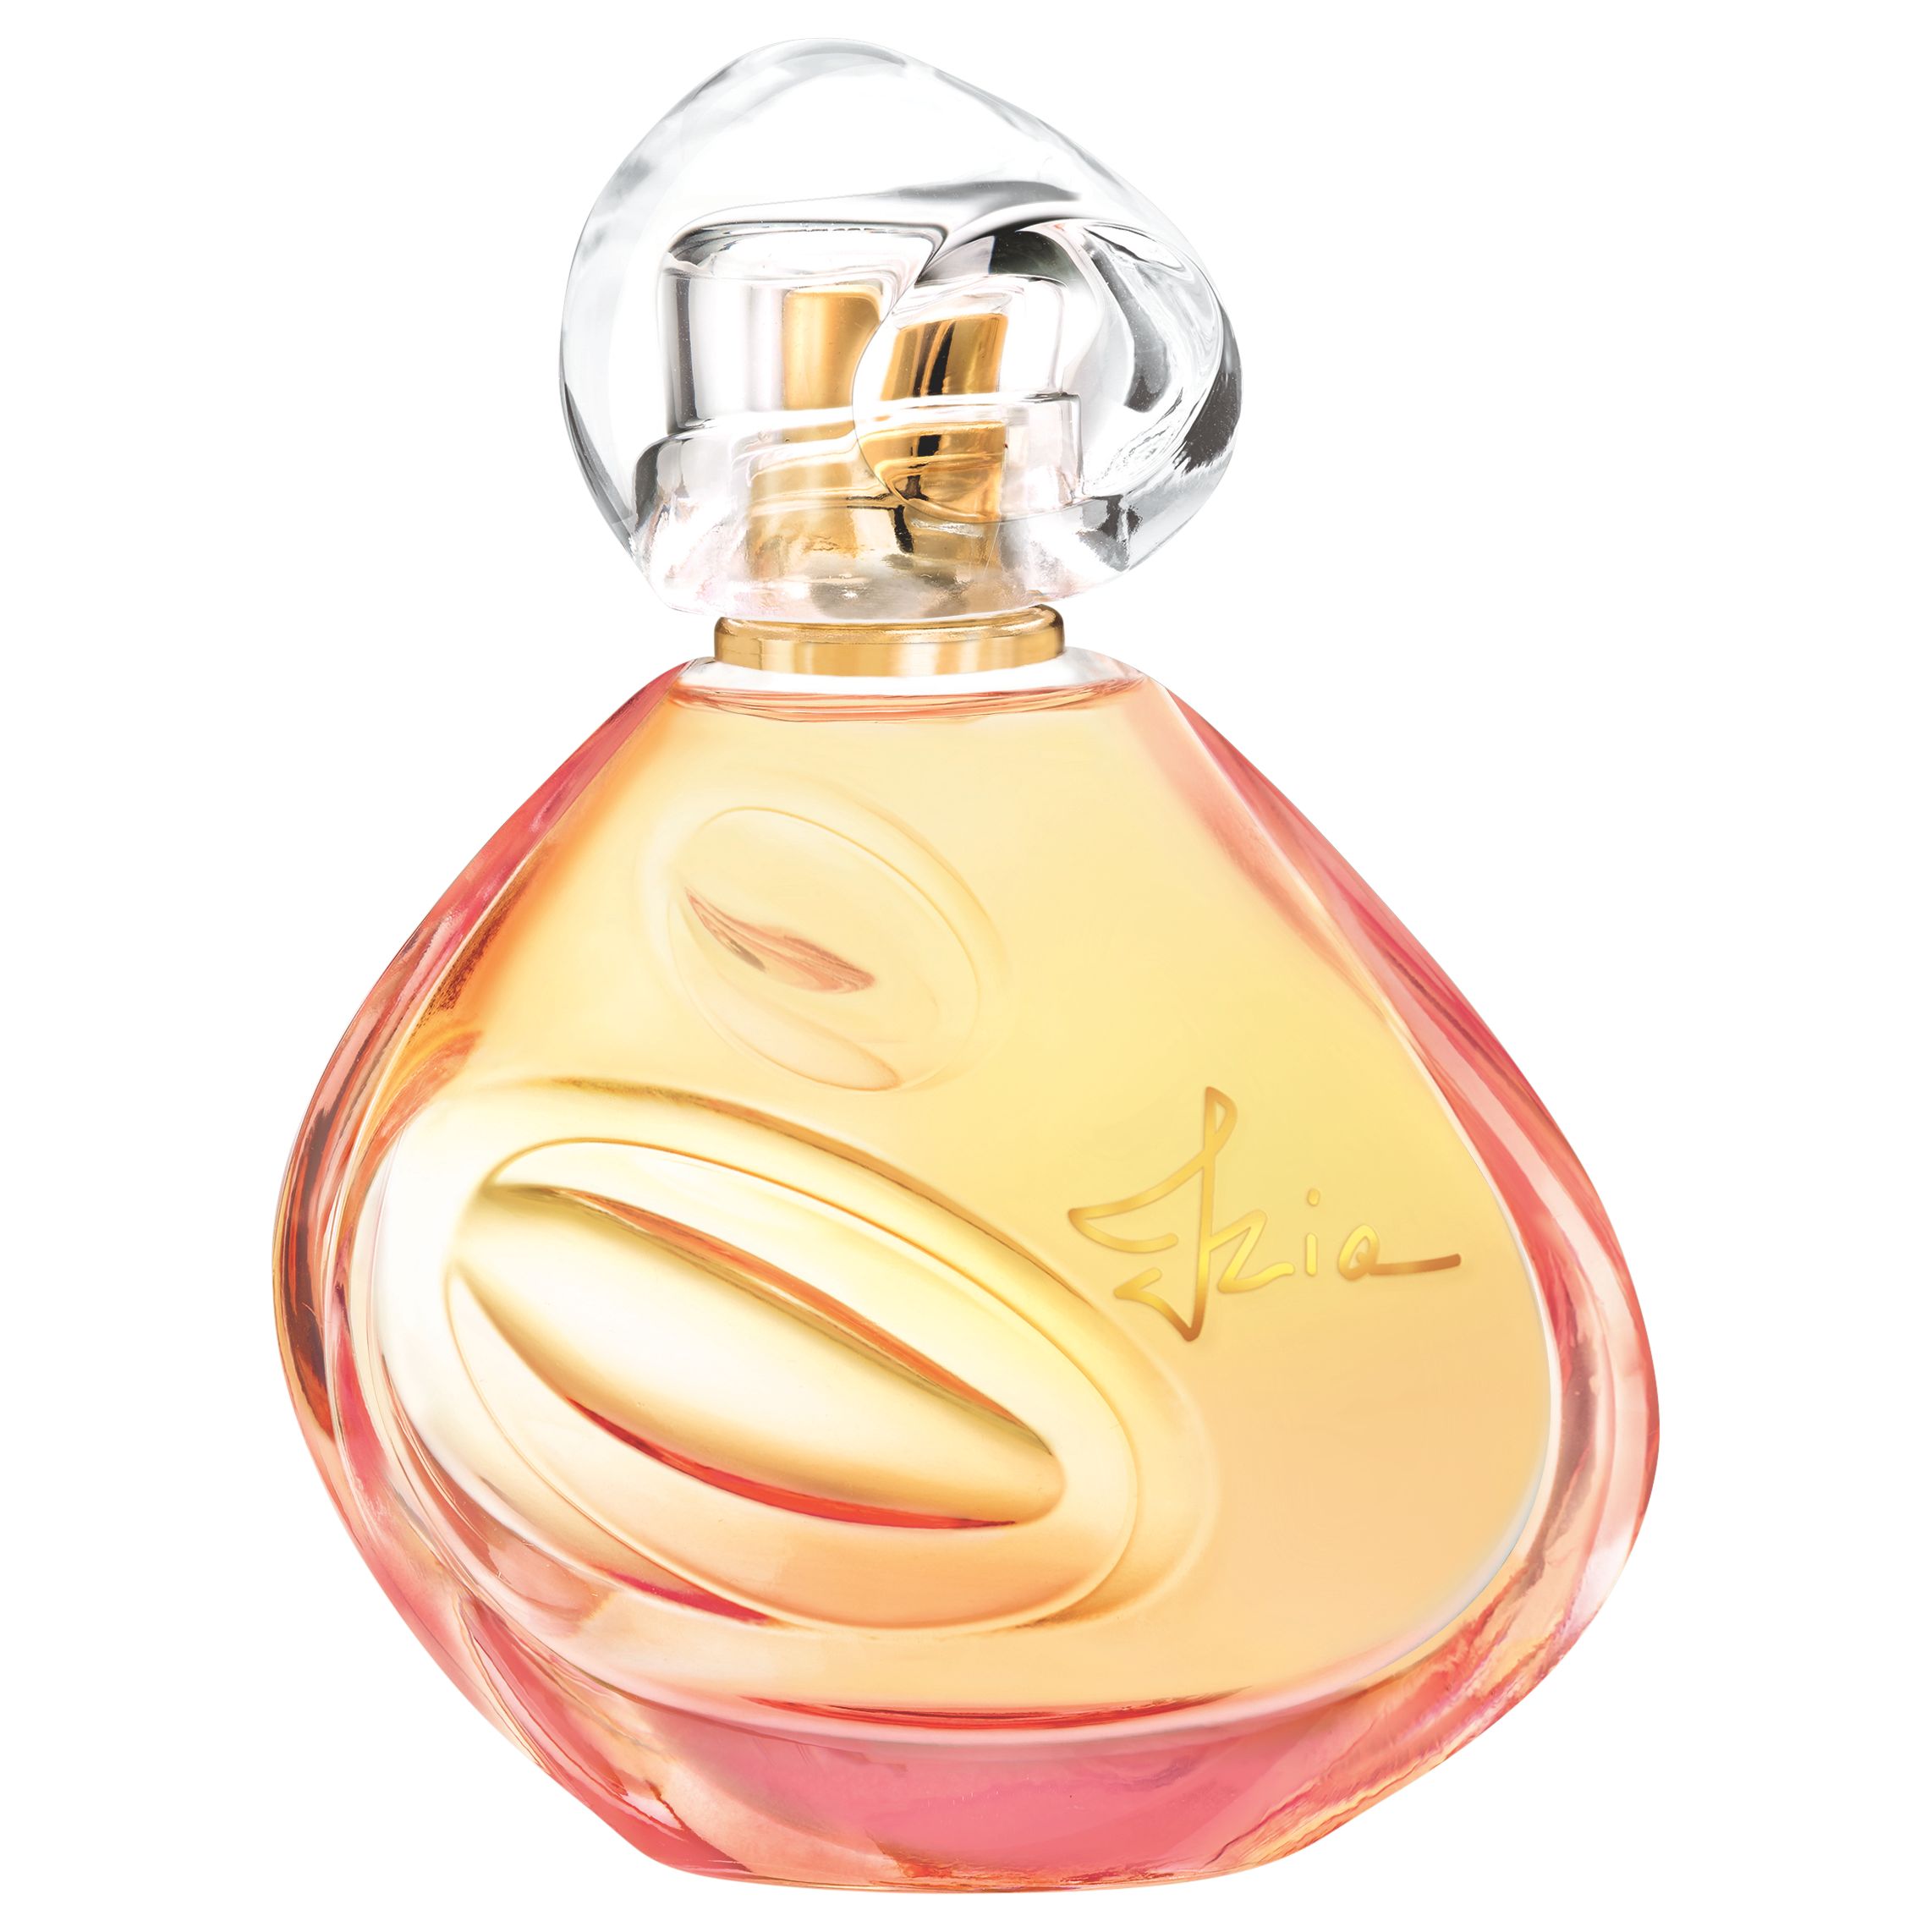 Sisley-Paris Izia Eau de Parfum, 50ml 1